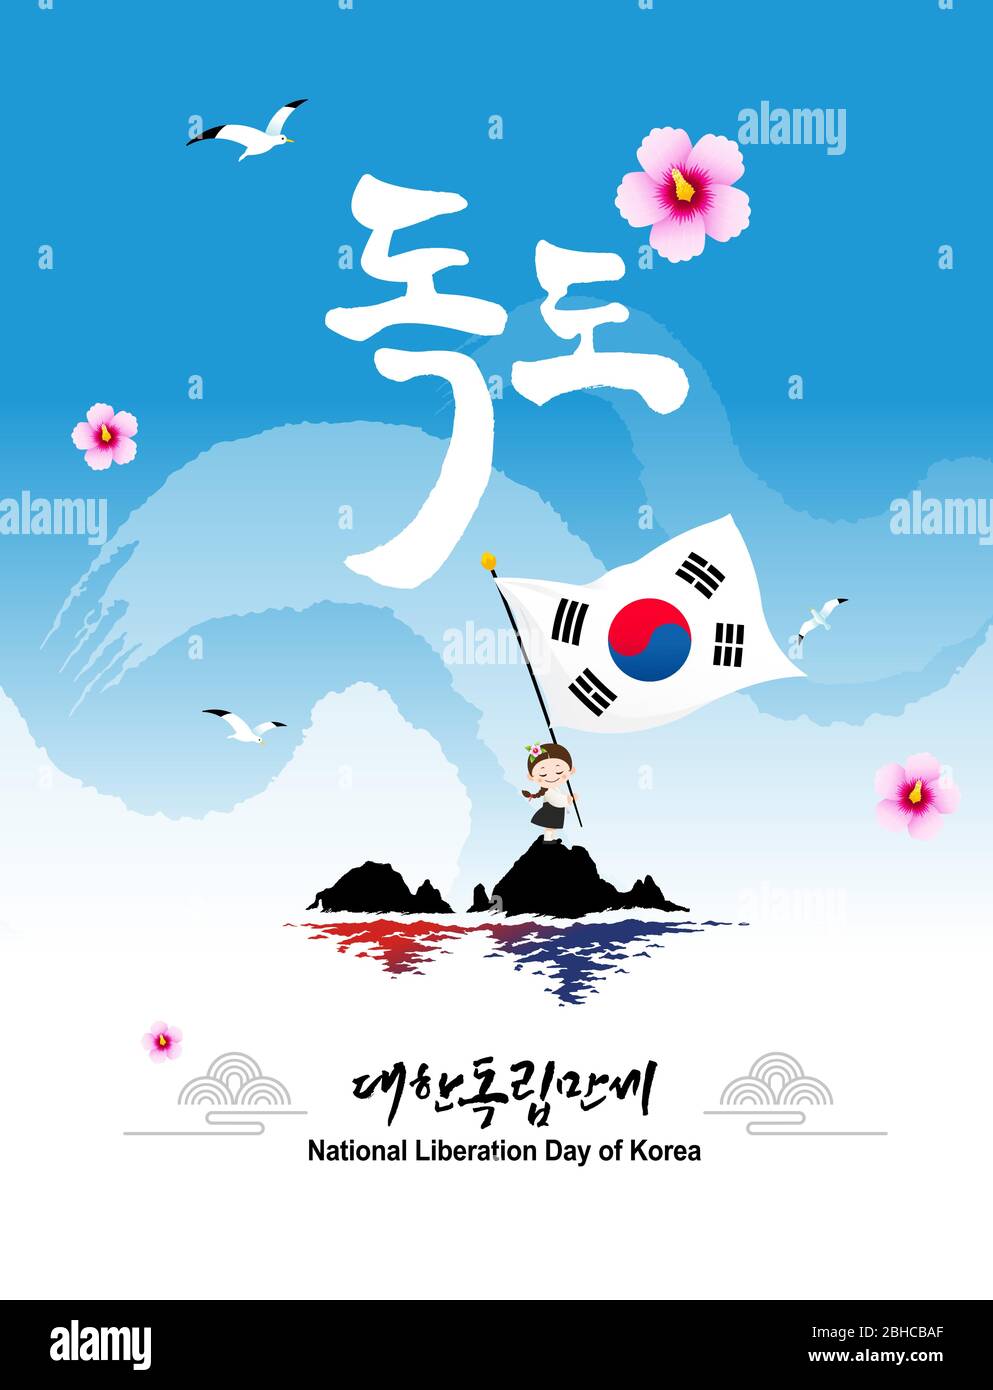 Journée de libération. Dokdo est une belle île en Corée. Les enfants de Hanbok sont en train de tenir des drapeaux. Dokdo, Journée de libération de la Corée, traduction coréenne. Illustration de Vecteur